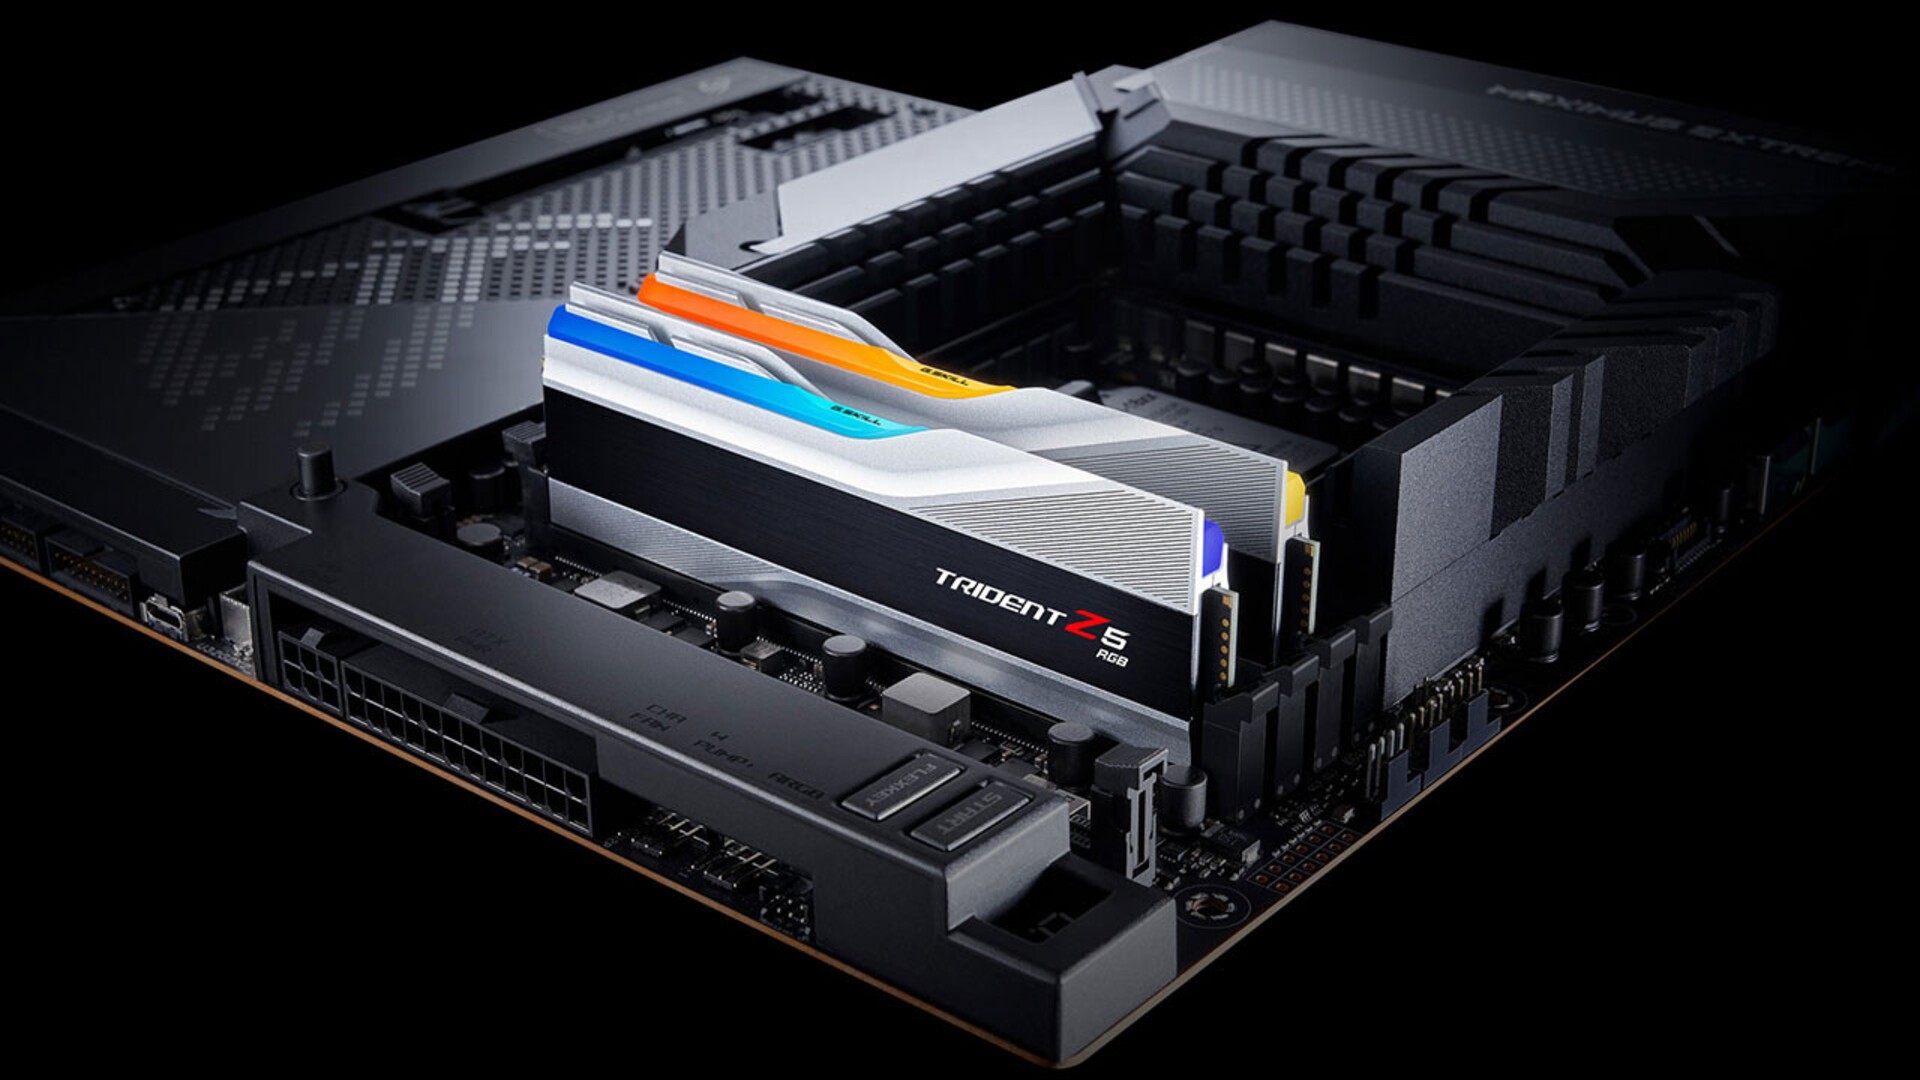  شركة G.SKILL تُعلن اليوم عن ذاكرة DDR5-6400 CL32 من عائلة Trident Z5